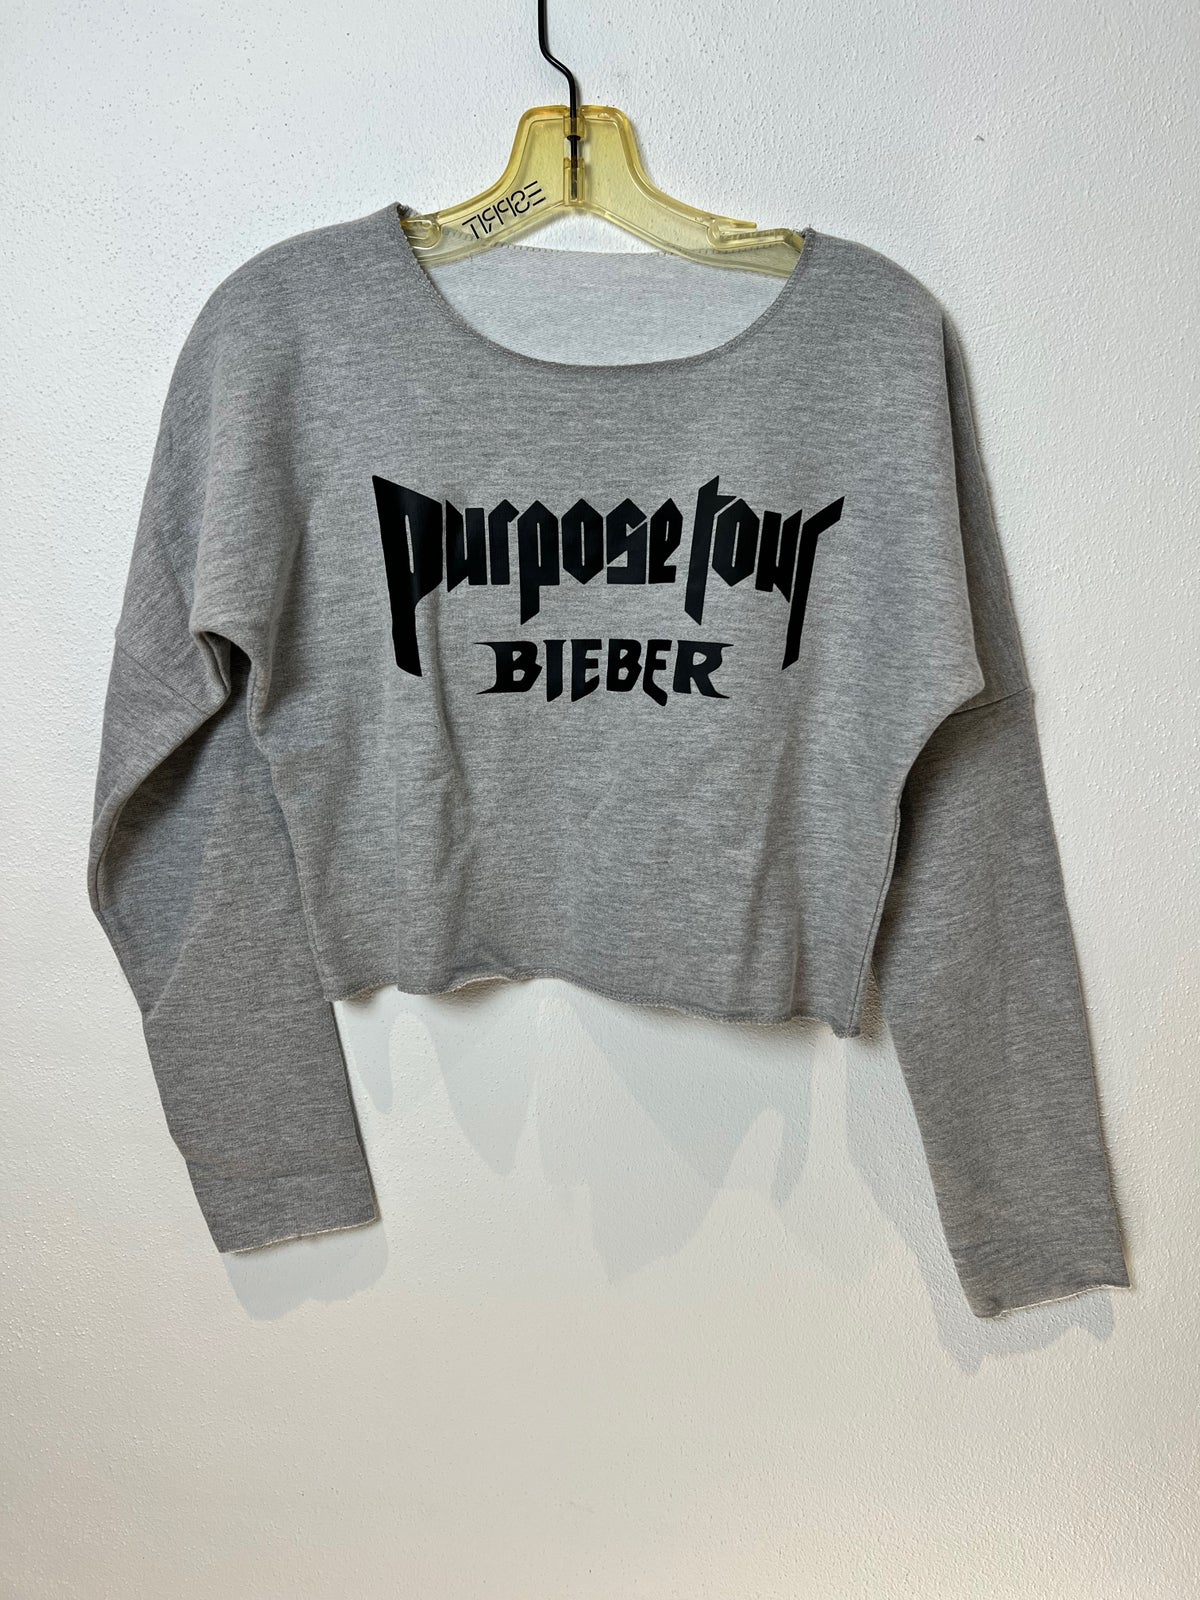 Top, Justin Bieber / Purpose , str. One size – dba.dk – Køb og af Nyt og Brugt